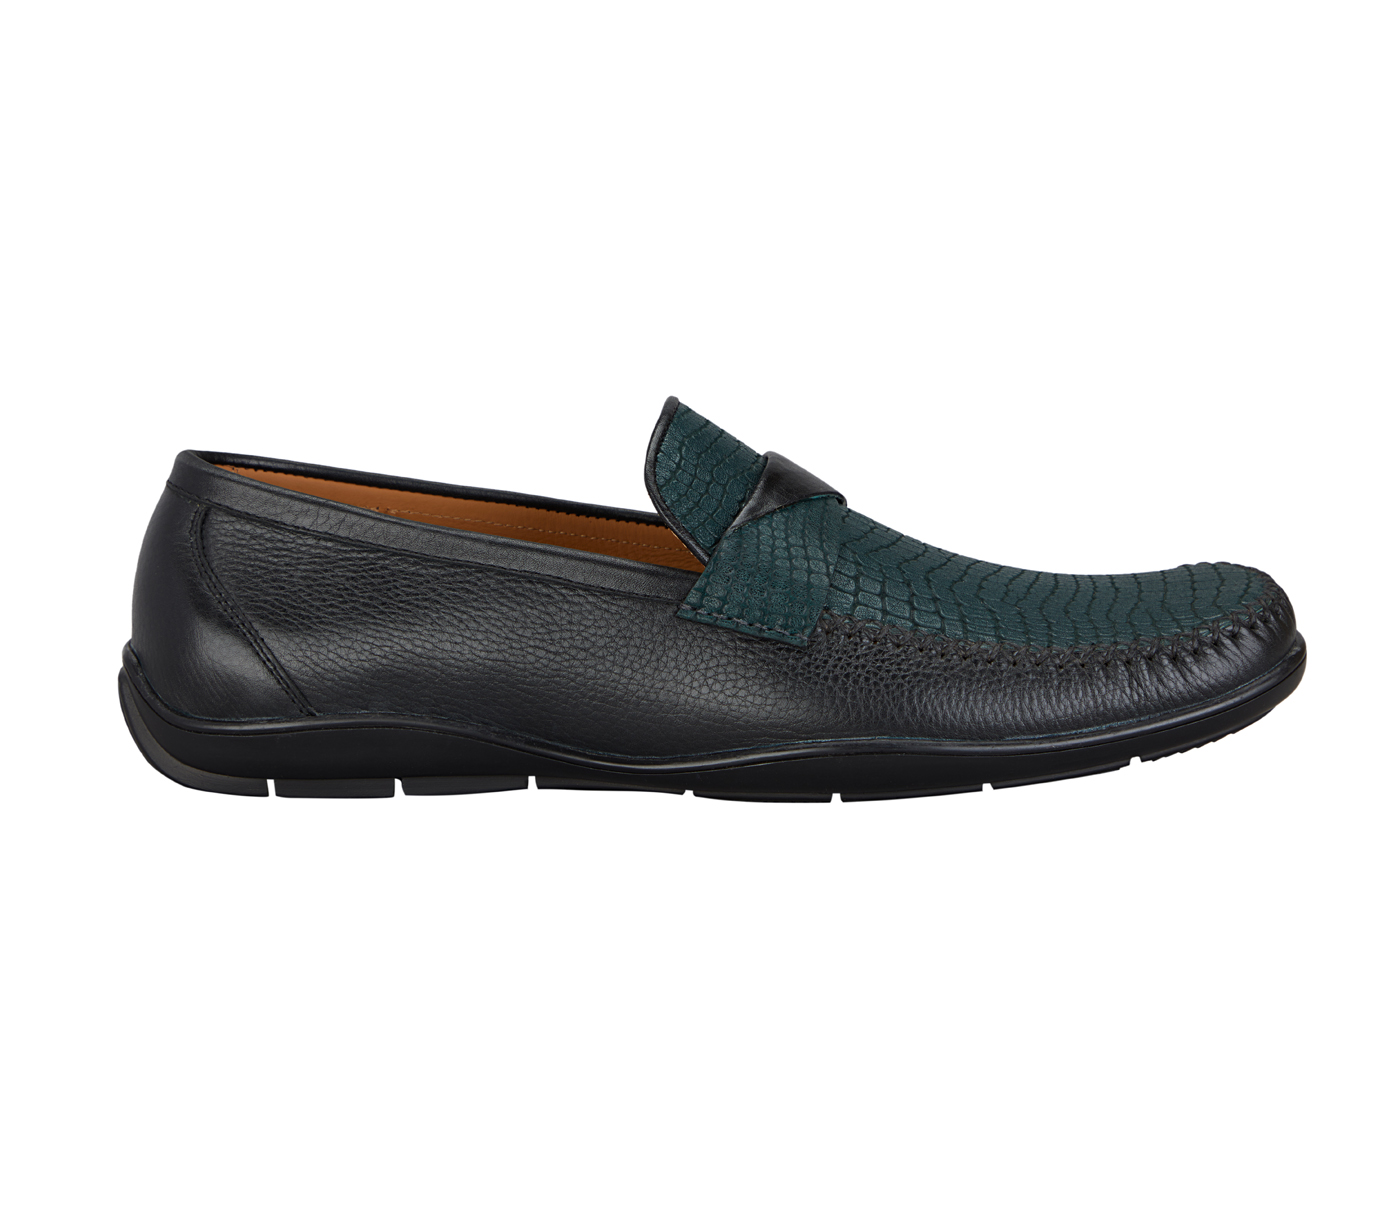 Footwear-Adamis Pure Leather Footwear For Men- - Black/Green